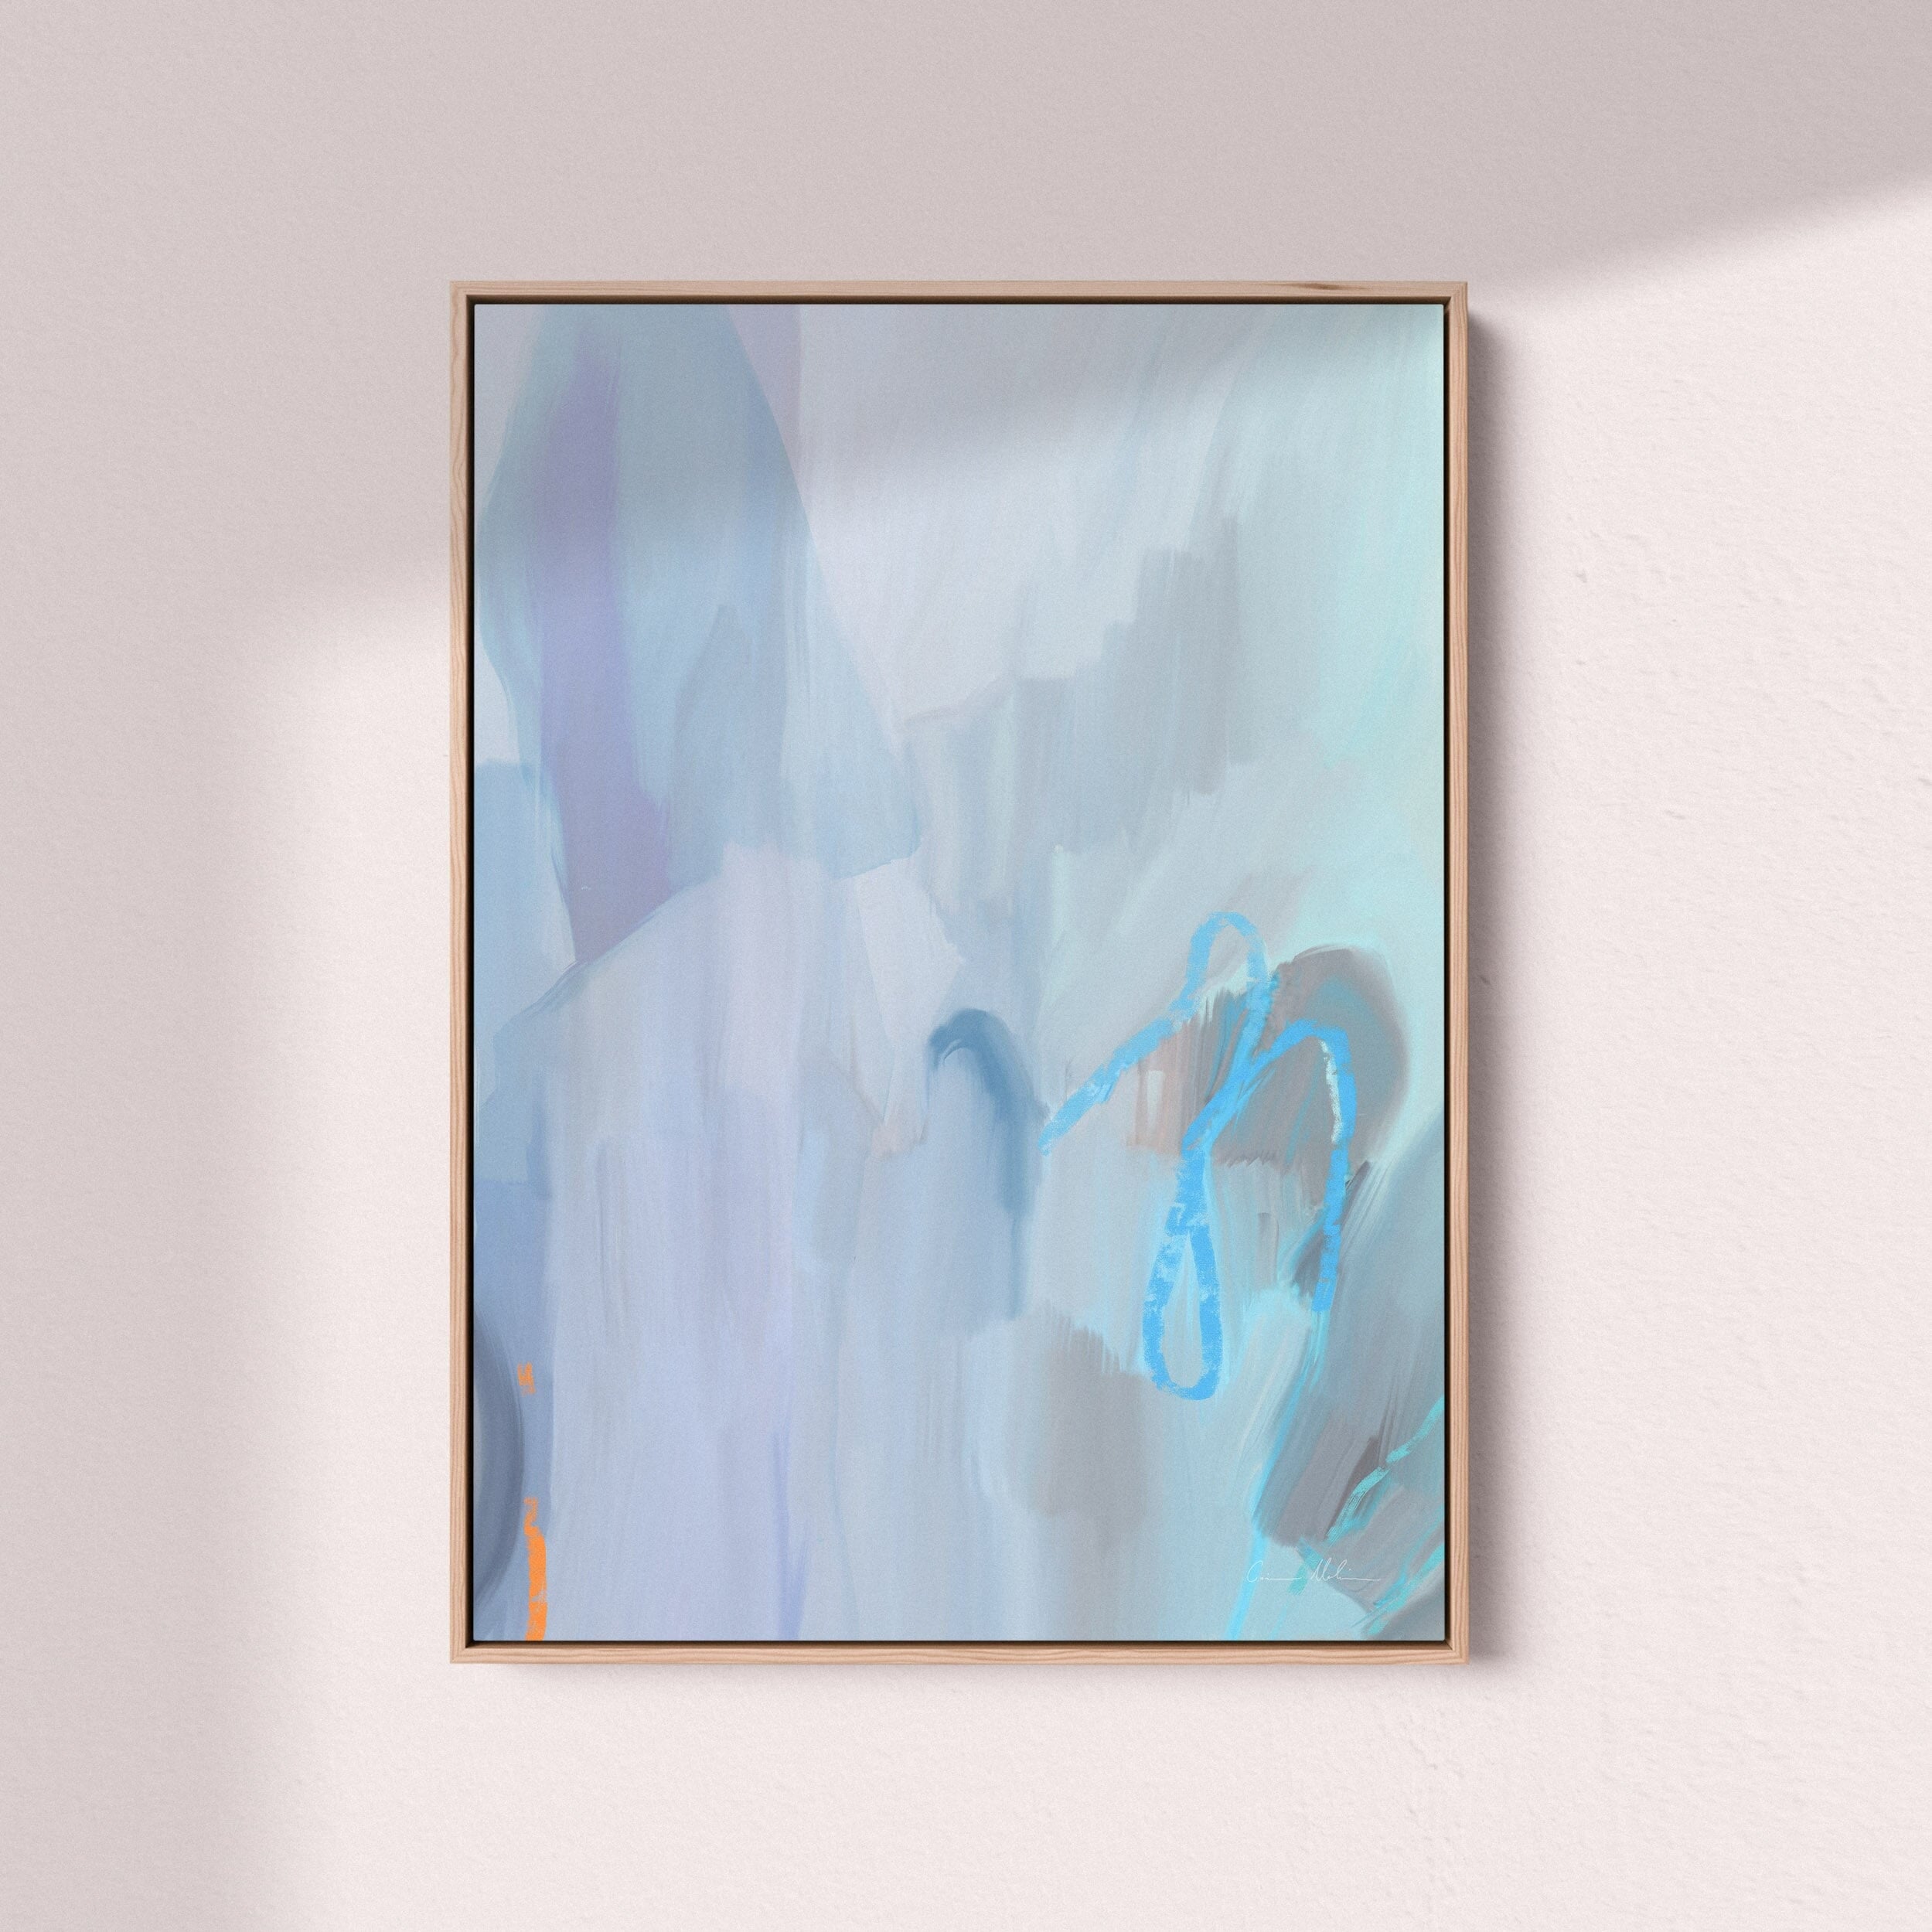 "Amalfi Coast" on Canvas - Portrait I Canvas Wall Art Corinne Melanie Art Professionally Framed - Oak 24x32in / 60x80cm 